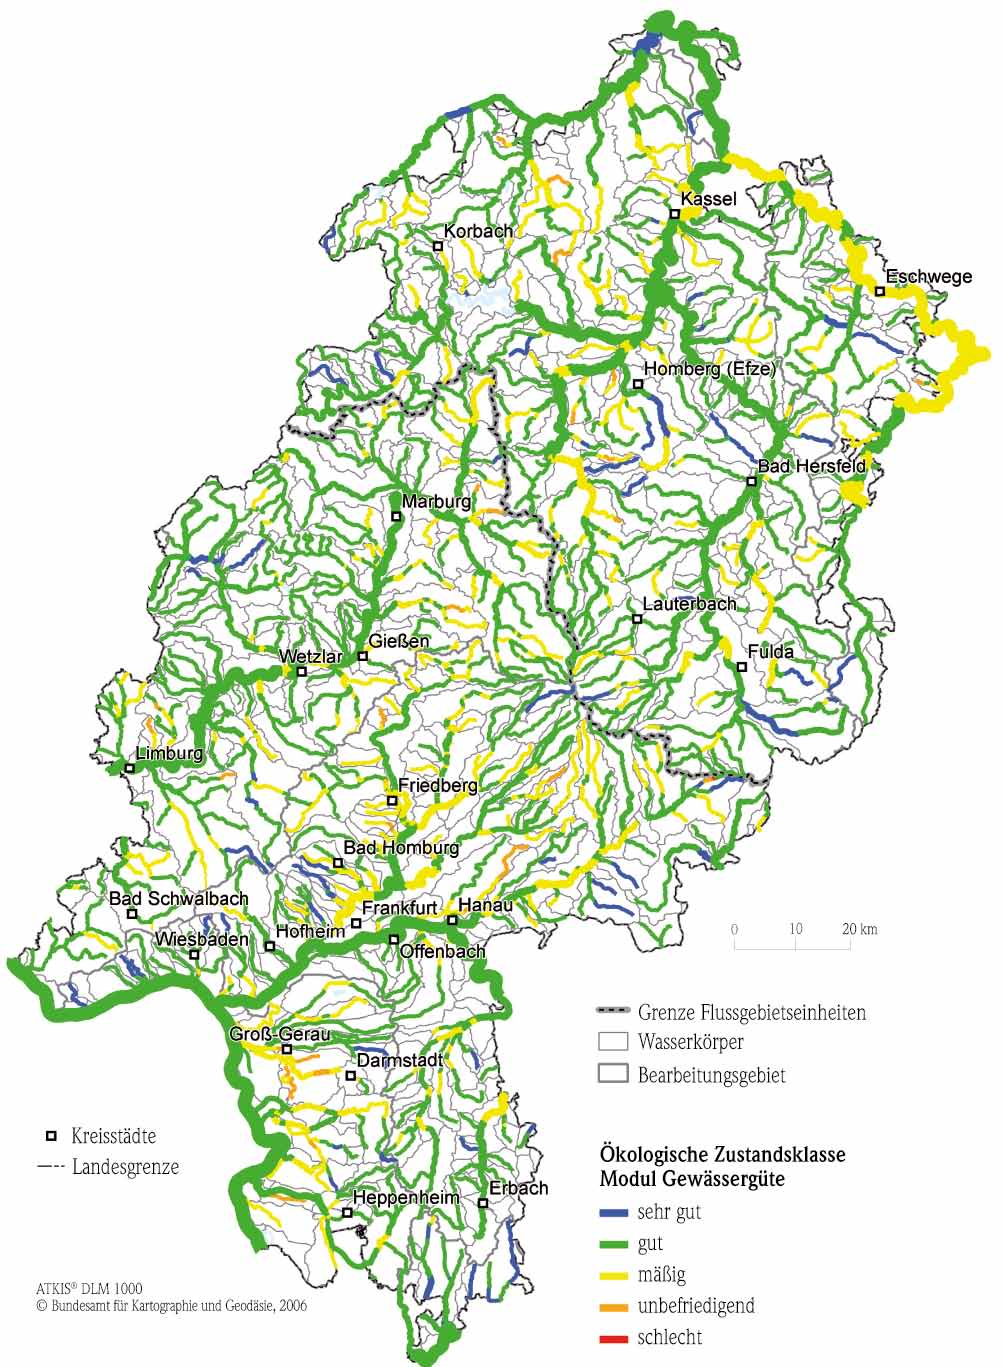 Hessisches Landesamt für Umwelt und Geologie saprobielle Situation verantwortlich ist.